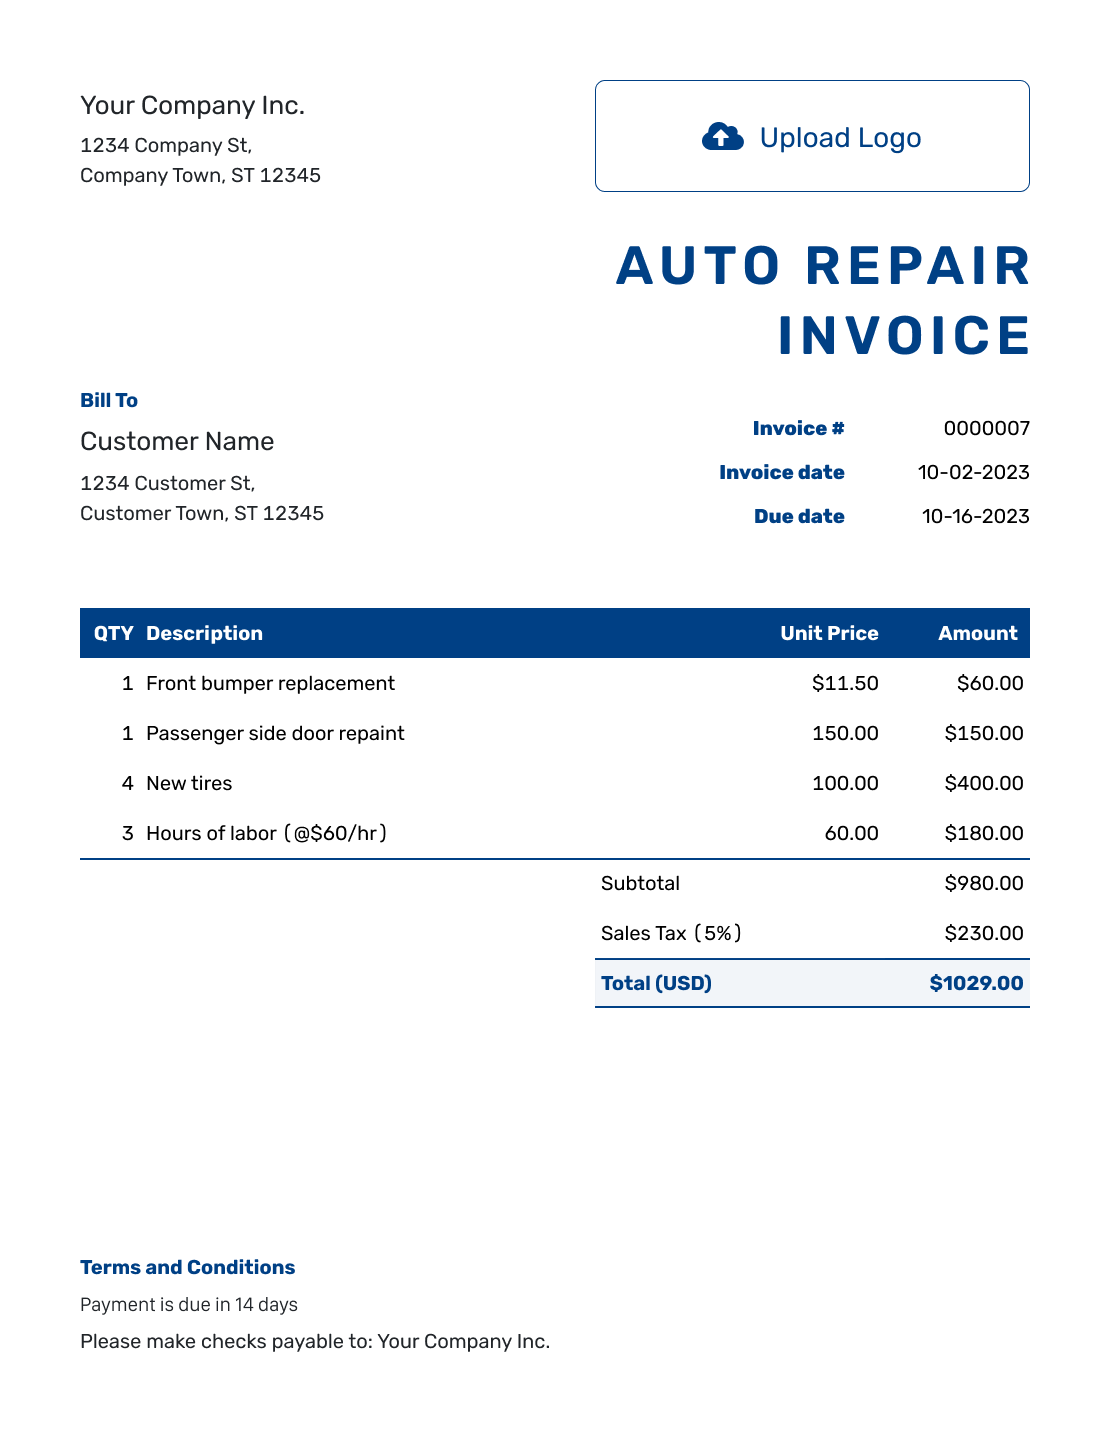 Sample Auto Repair Invoice Template